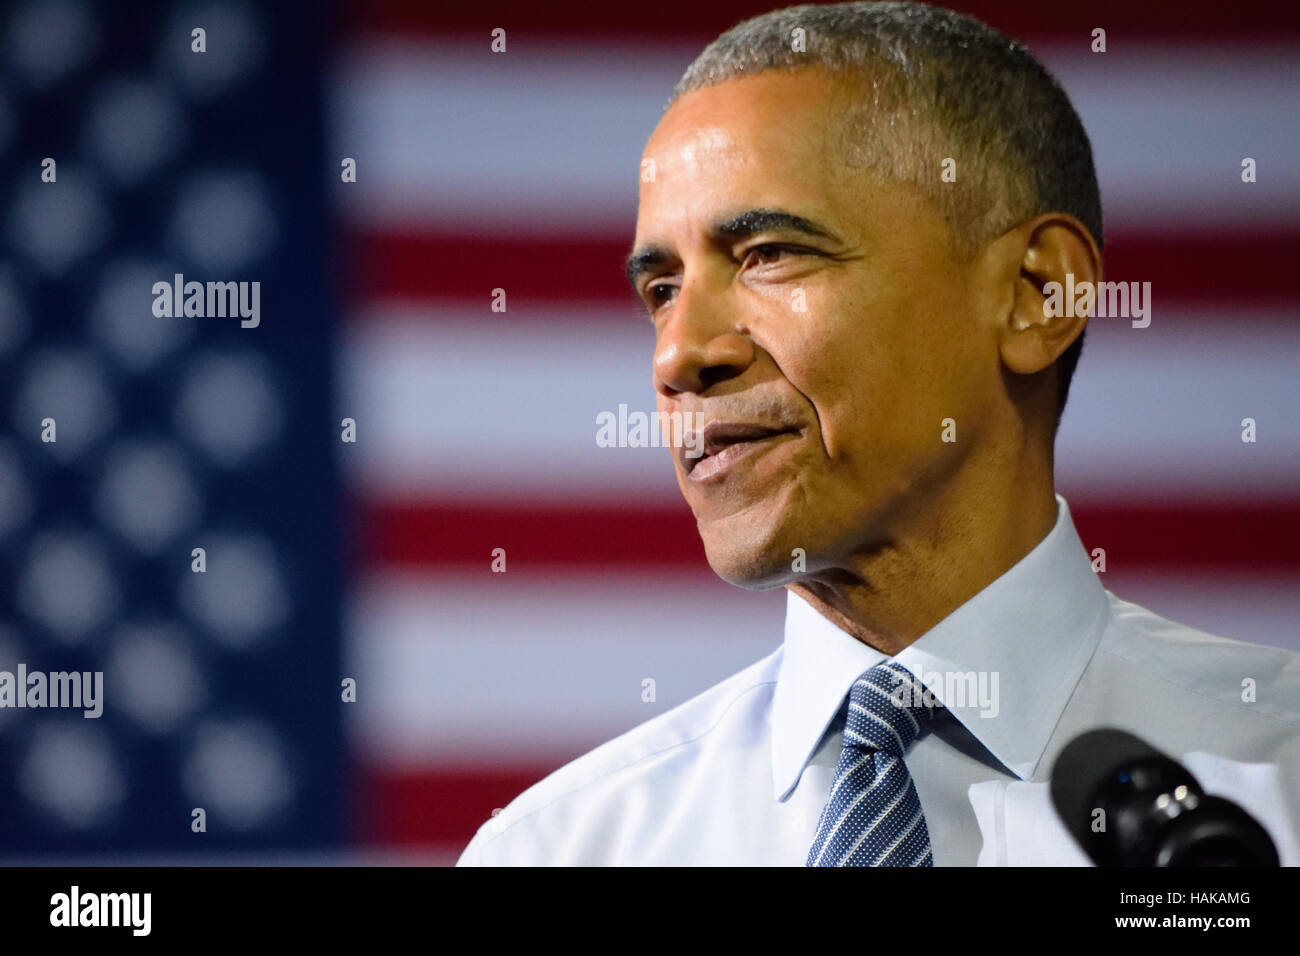 Barack Obama, Präsident der Vereinigten Staaten. Auf der Suche nach rechts gegen die amerikanische Flagge. Stockfoto